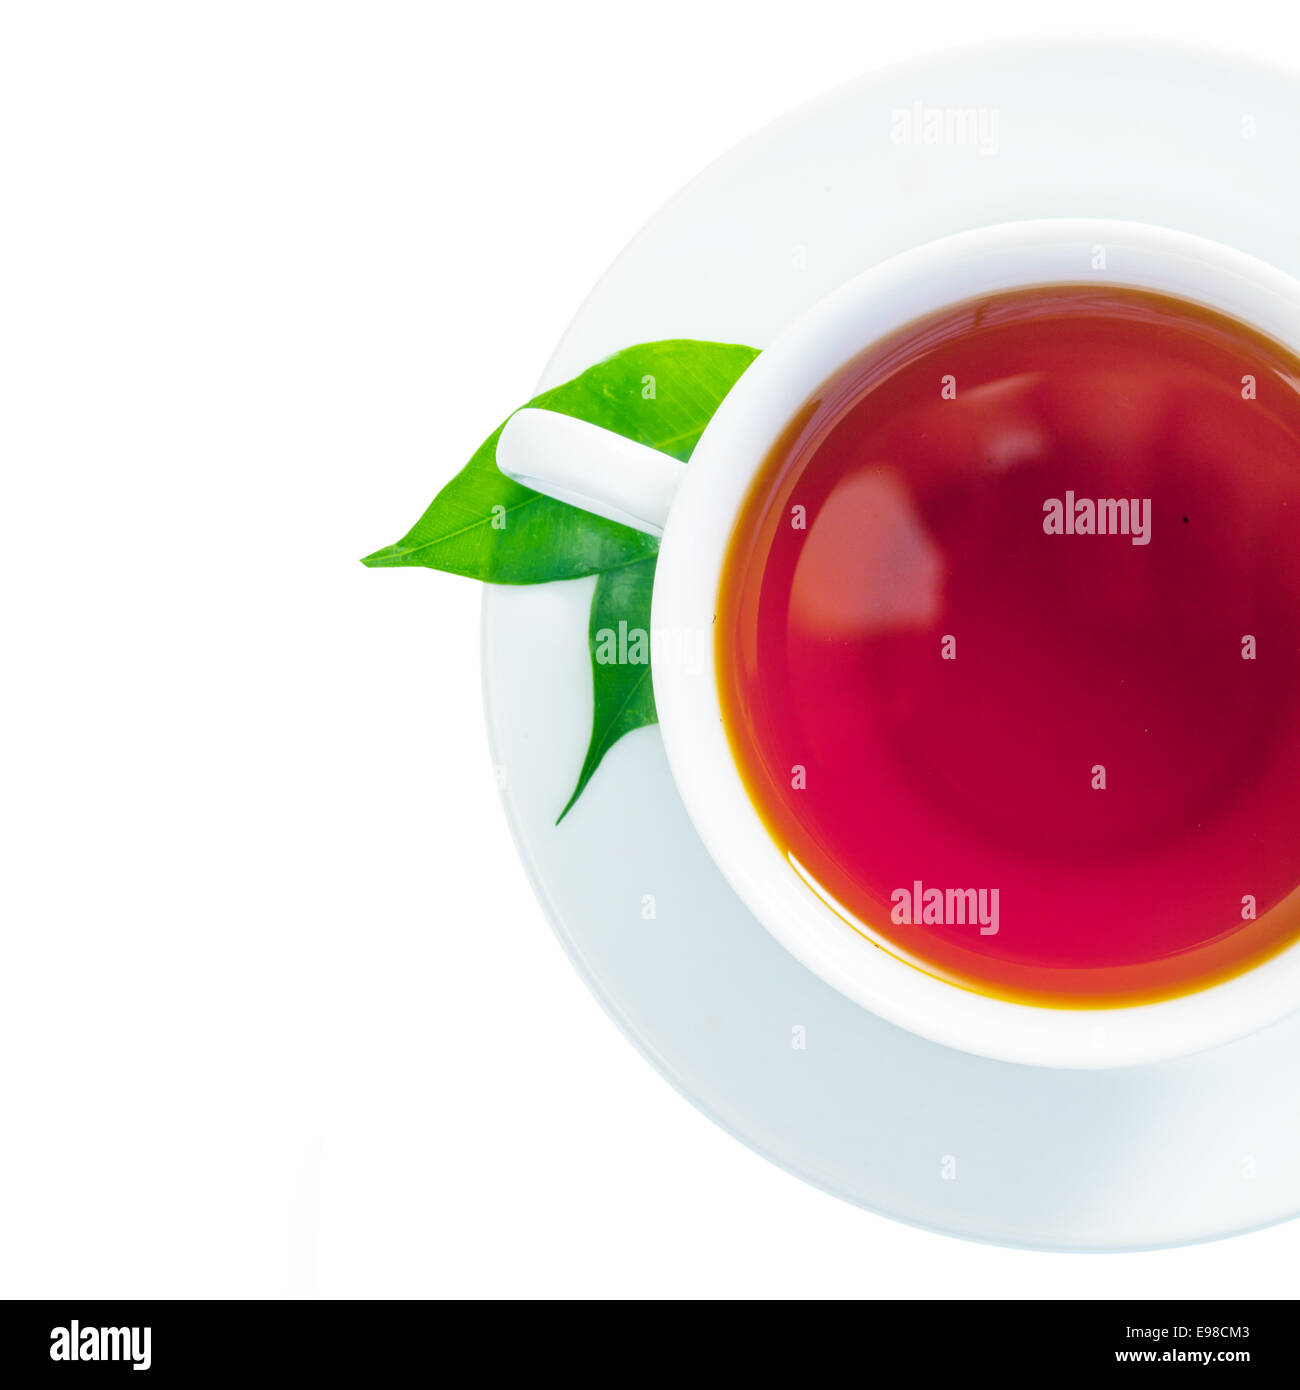 Vue de dessus d'une jolie tasse de thé fraîchement infusé avec deux feuilles de thé vert dans la soucoupe isolated on white Banque D'Images